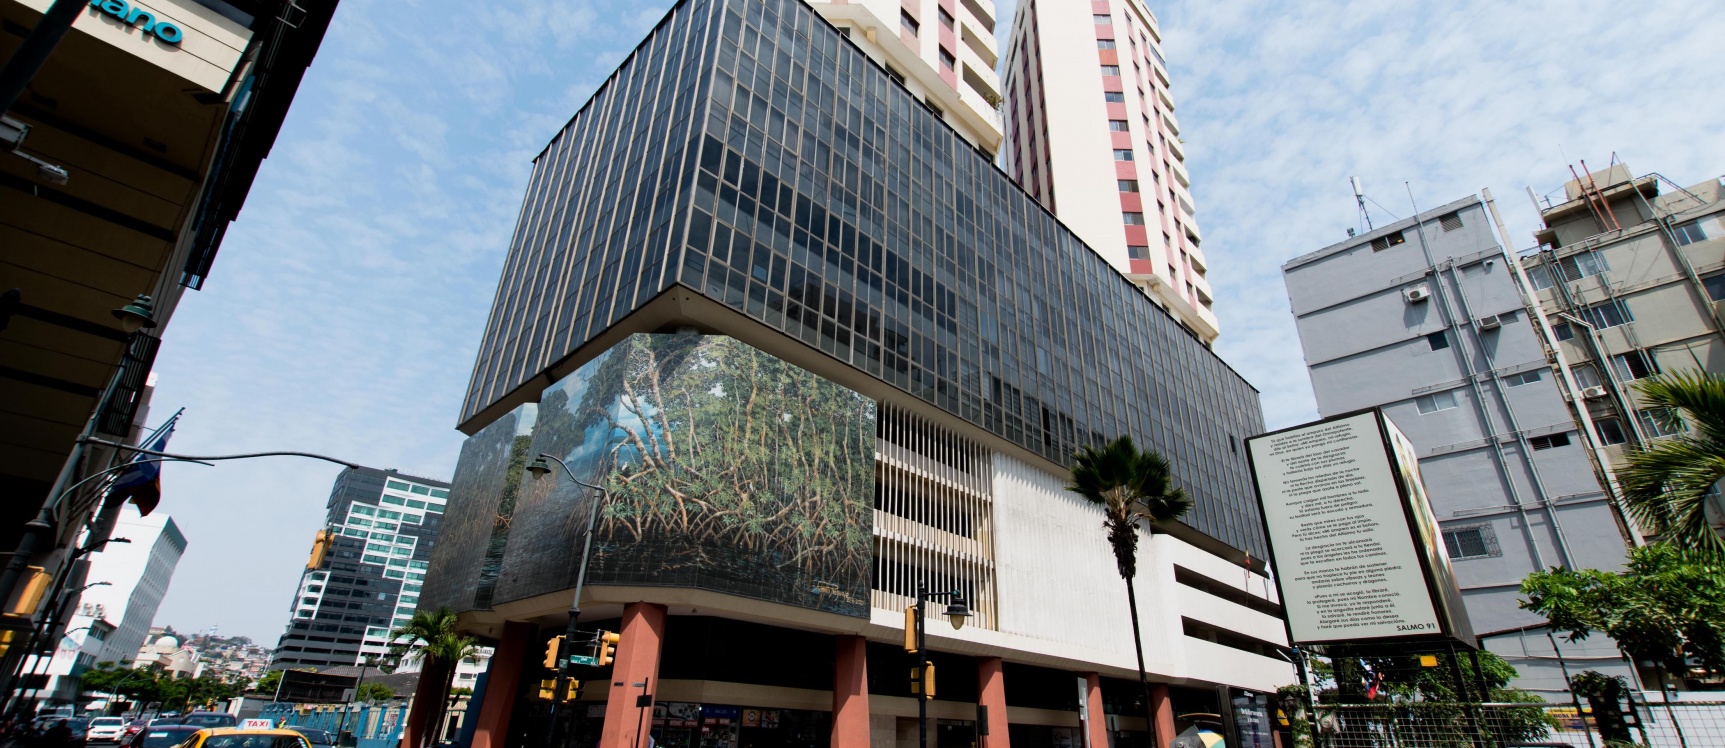 GeoBienes - Departamento en alquiler ubicado en Torres del Río, Centro de Guayaquil - Plusvalia Guayaquil Casas de venta y alquiler Inmobiliaria Ecuador